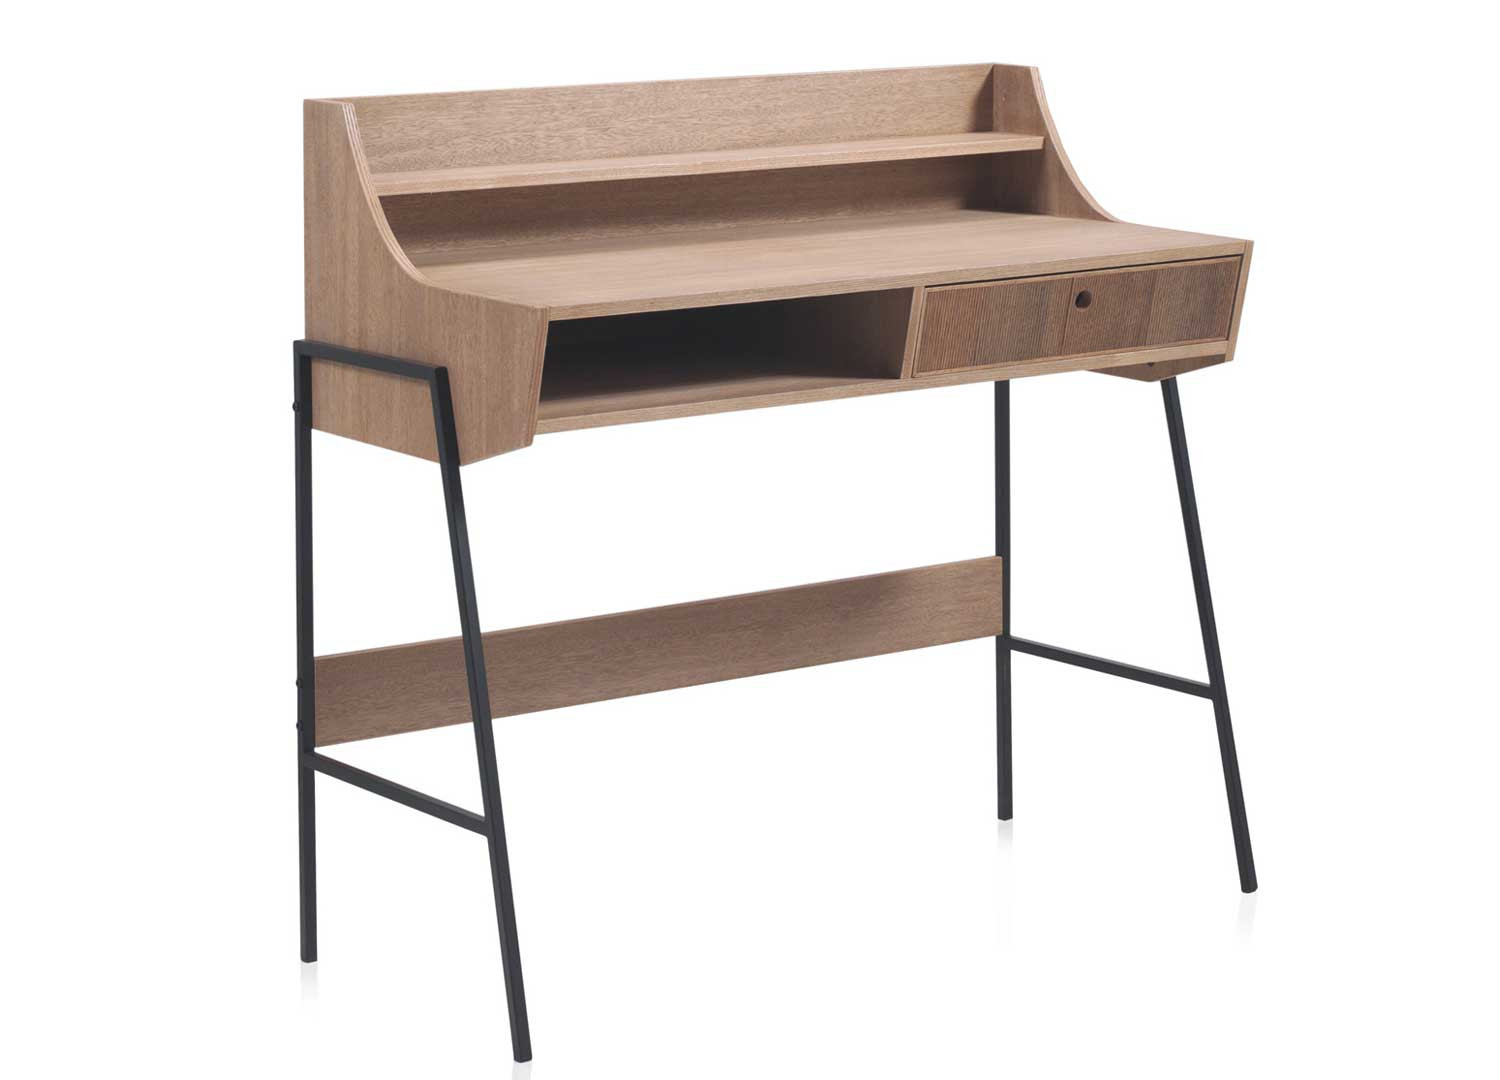 Bureau avec étagère intégrée en bois clair touche rustique